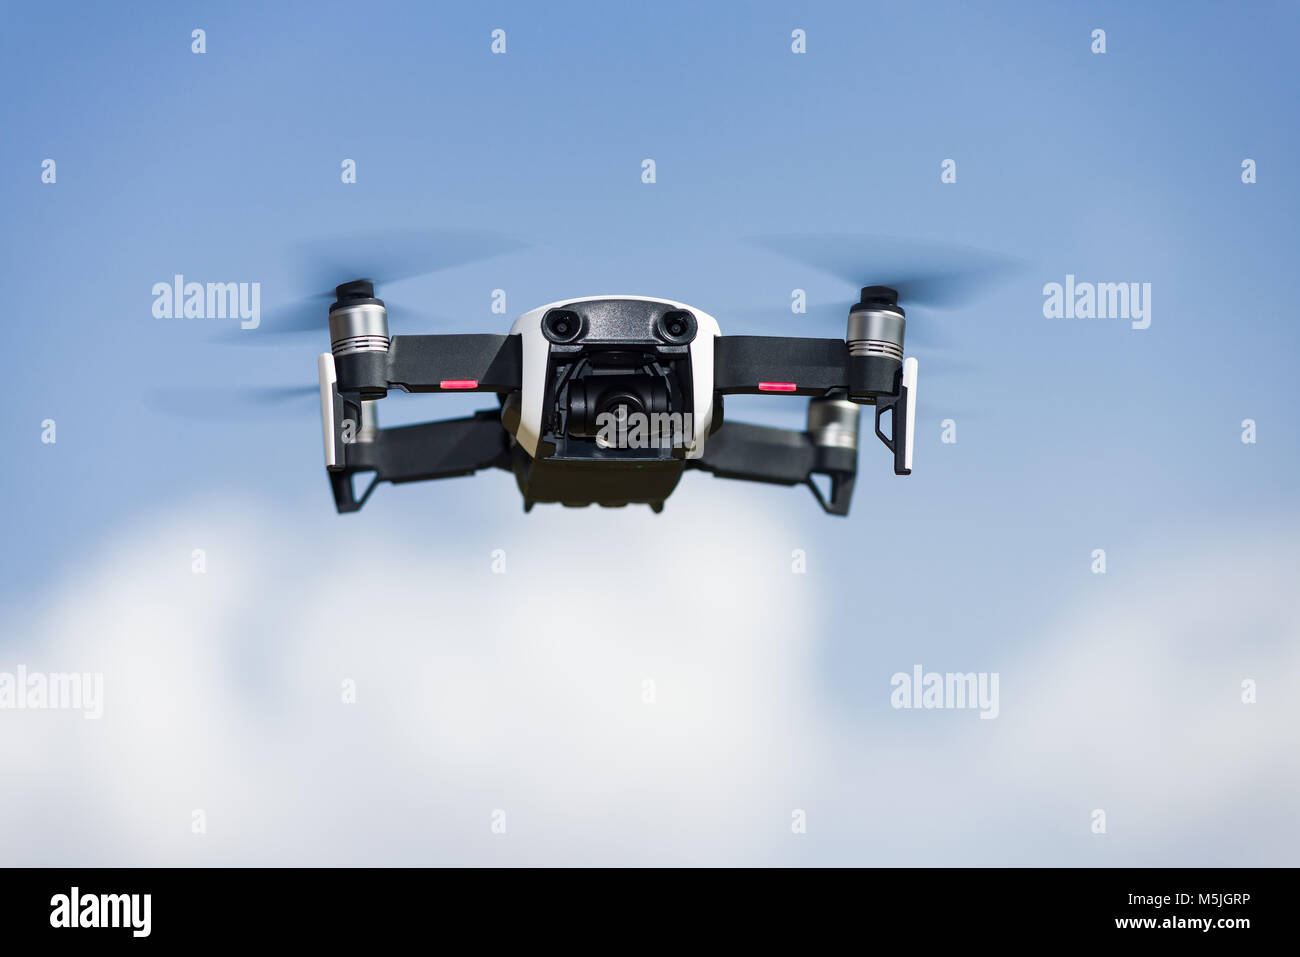 Un DJI Mavic aria drone in volo contro un cielo blu con nuvole Foto Stock